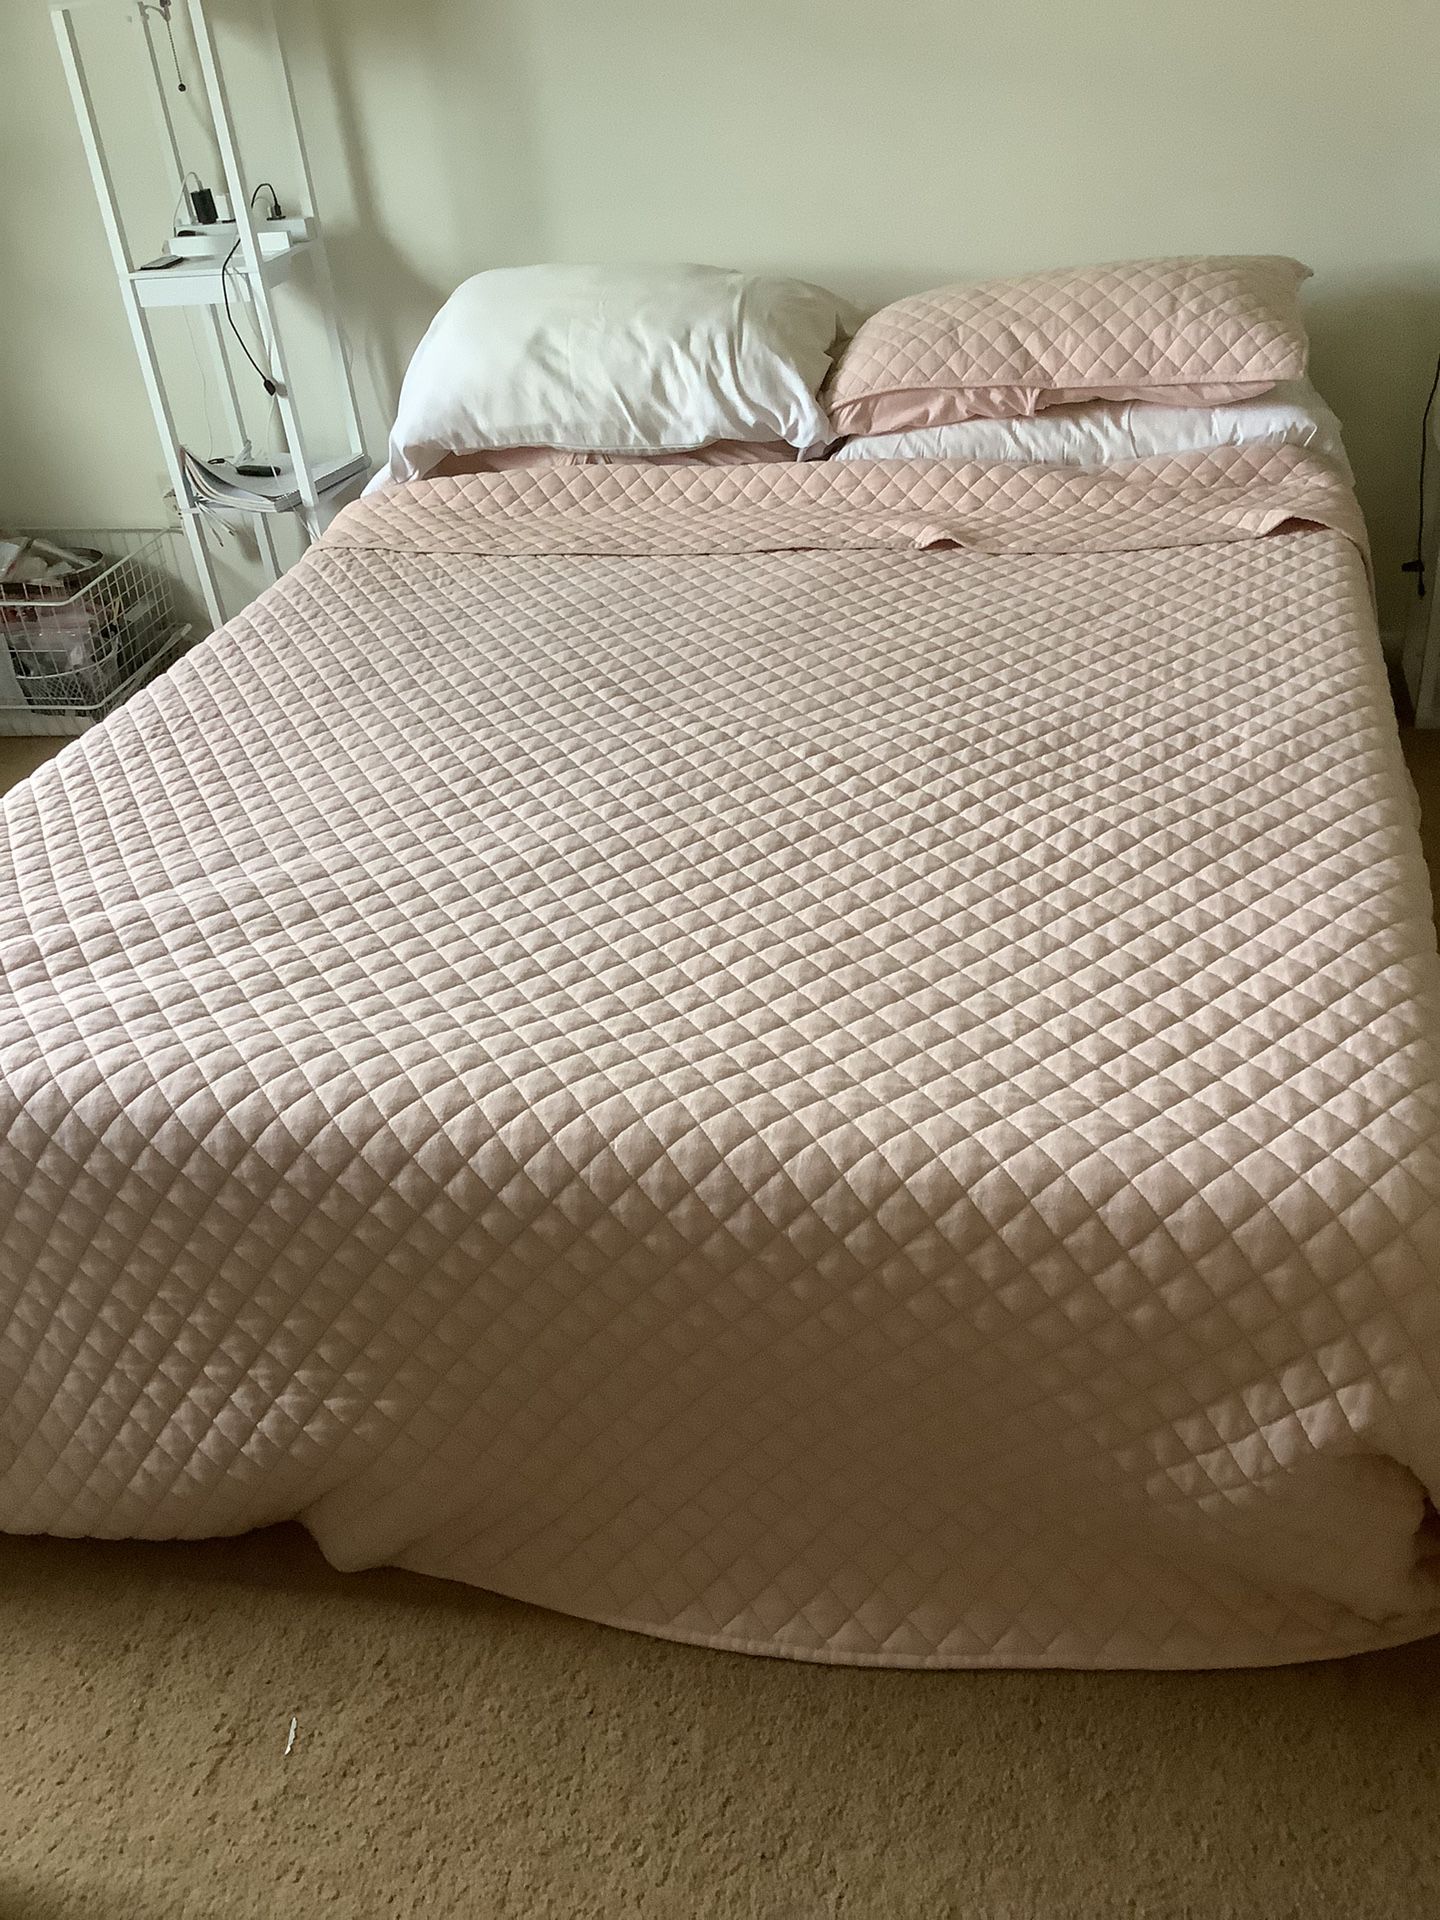 Queen Mattress, Pillows, Blanket (NO BED FRAME)